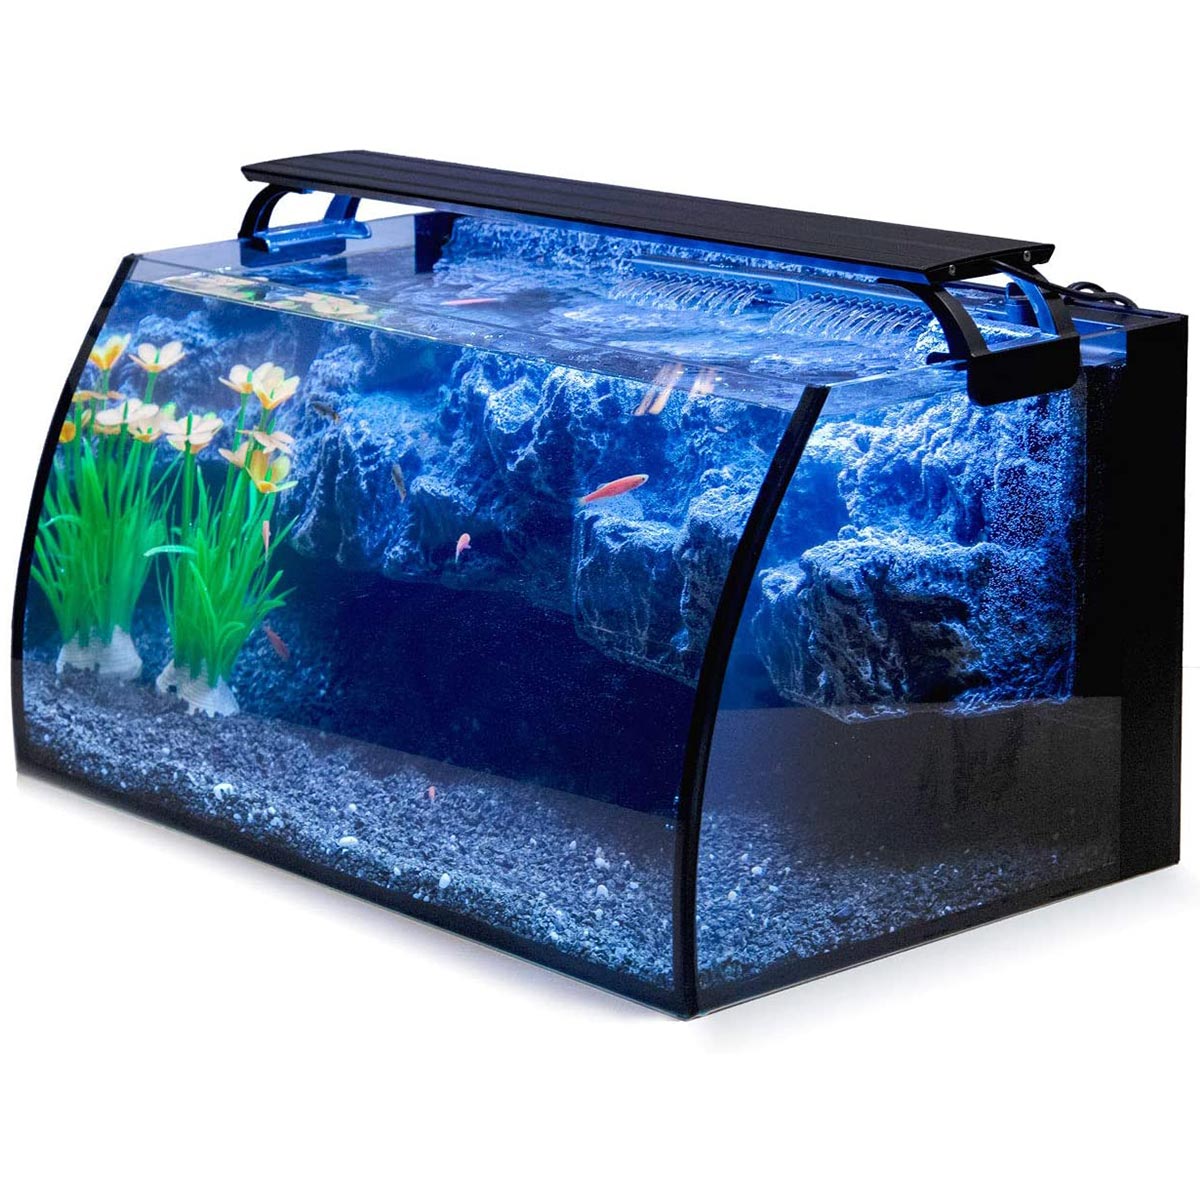 8 Gallon Fish Tank Kit for Starter - Hygger